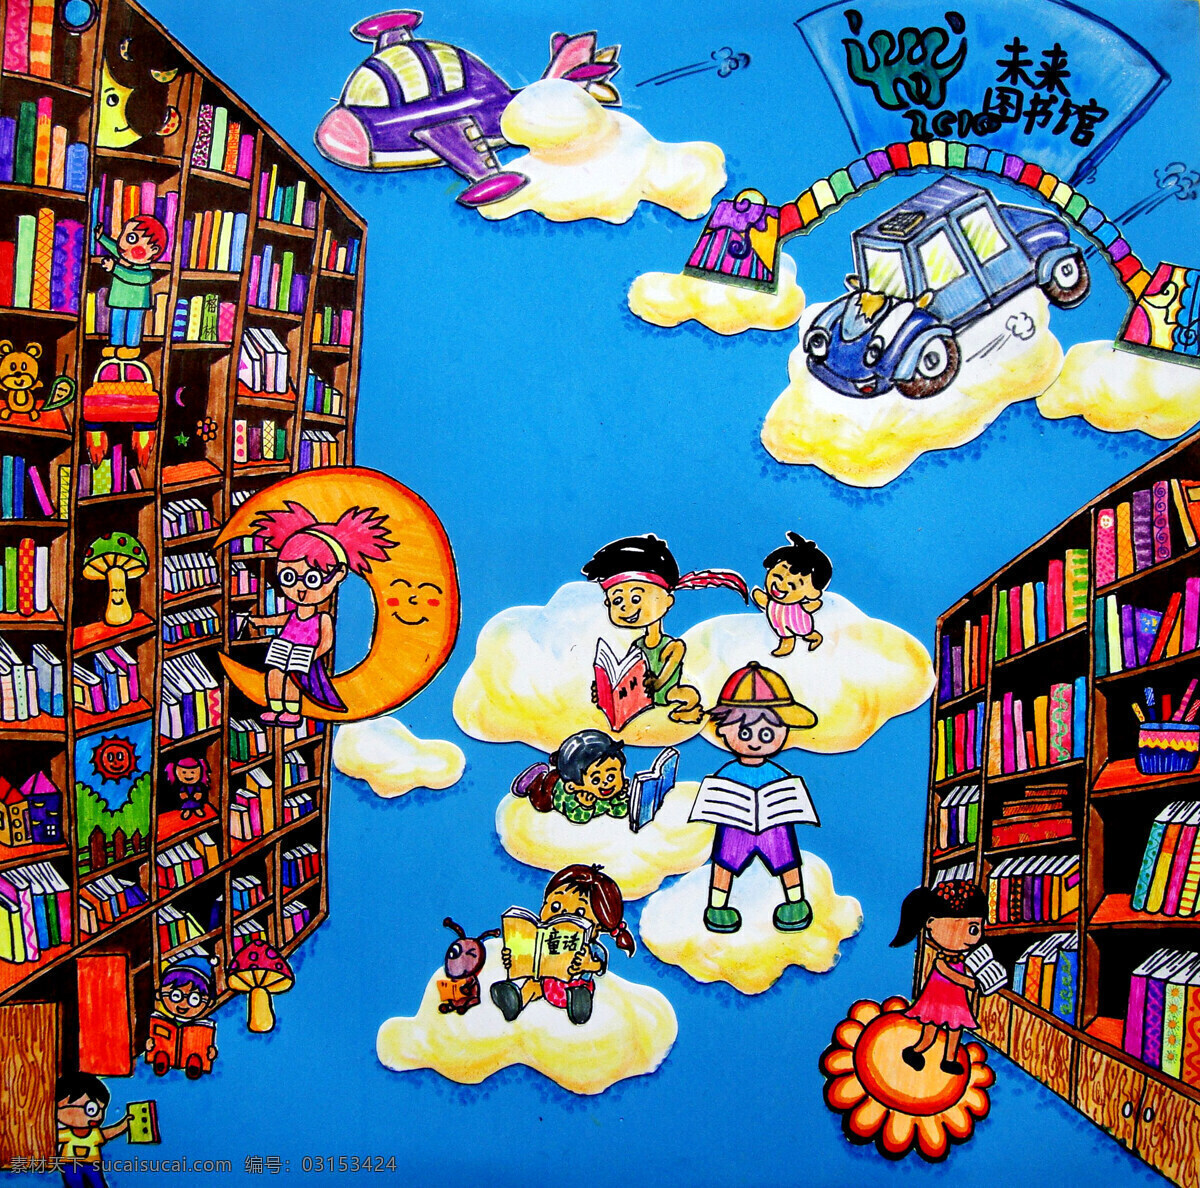 未来图书馆 绘画 儿童画 图书馆 书籍 书柜 读者 云彩 月亮 飞船 车子 想象力 儿童画作品 绘画书法 文化艺术